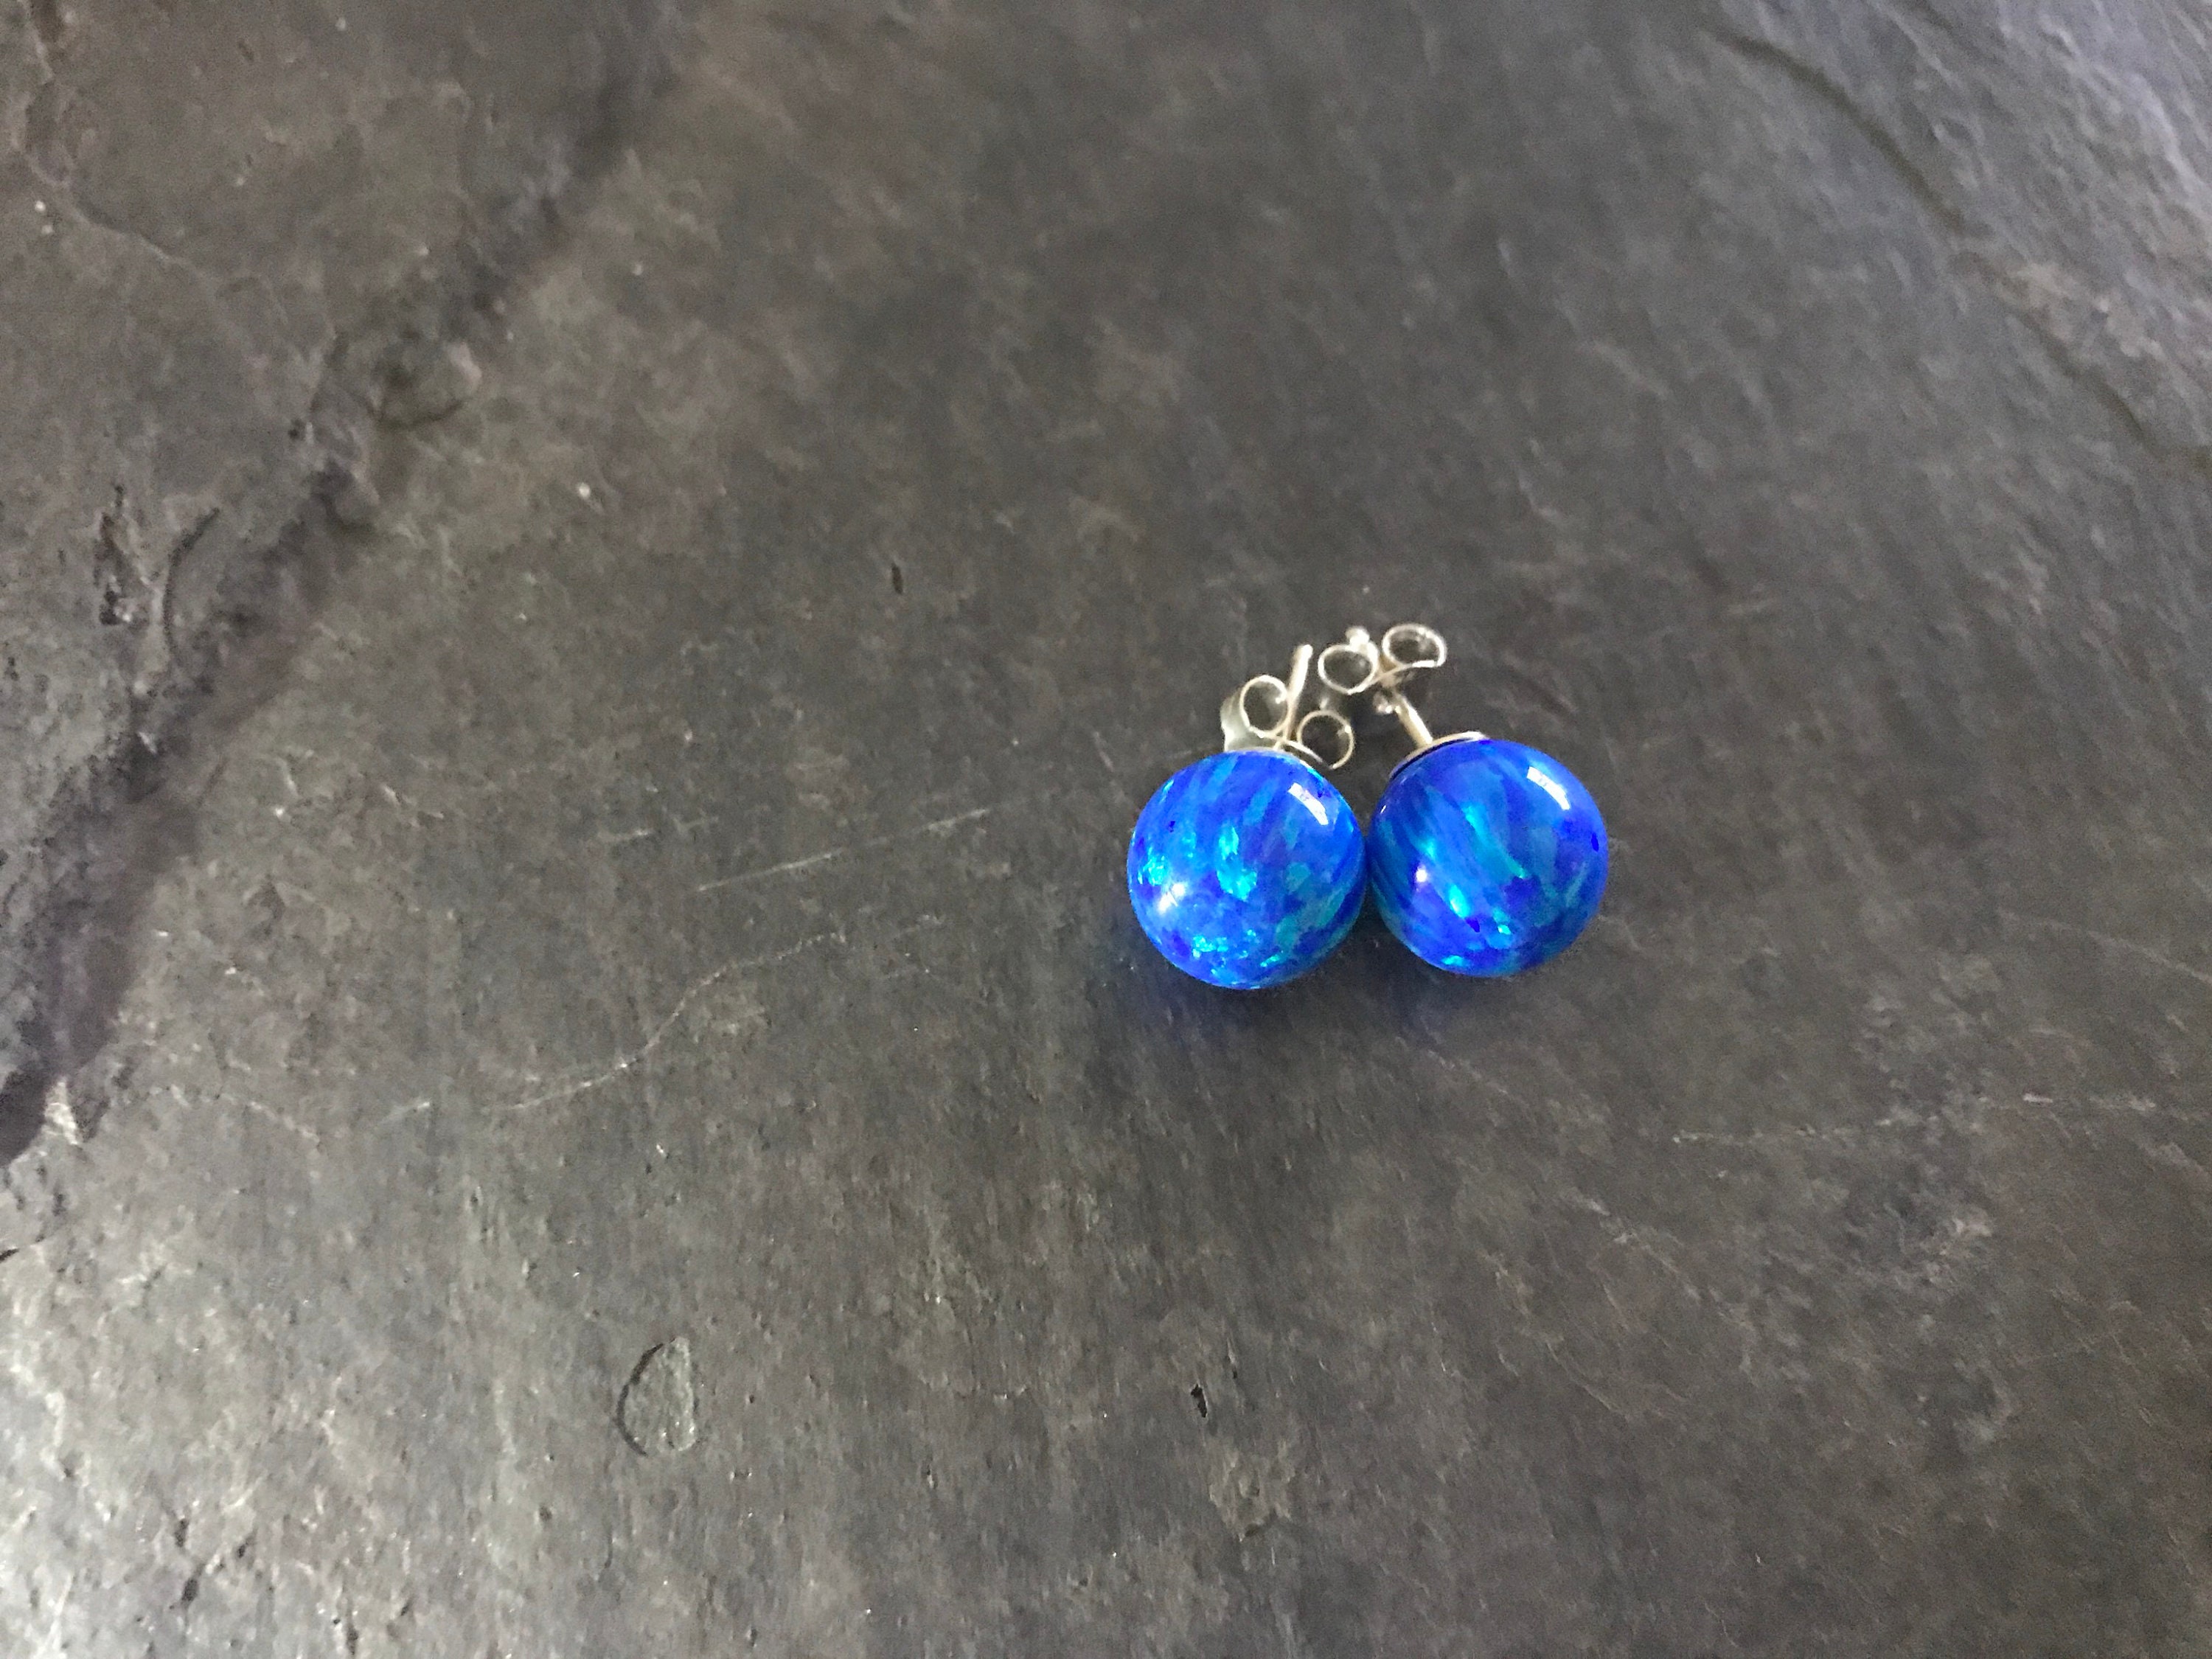 10mm Intense Blue Opal Stud Earrings Set On Sterling Silver Etsy